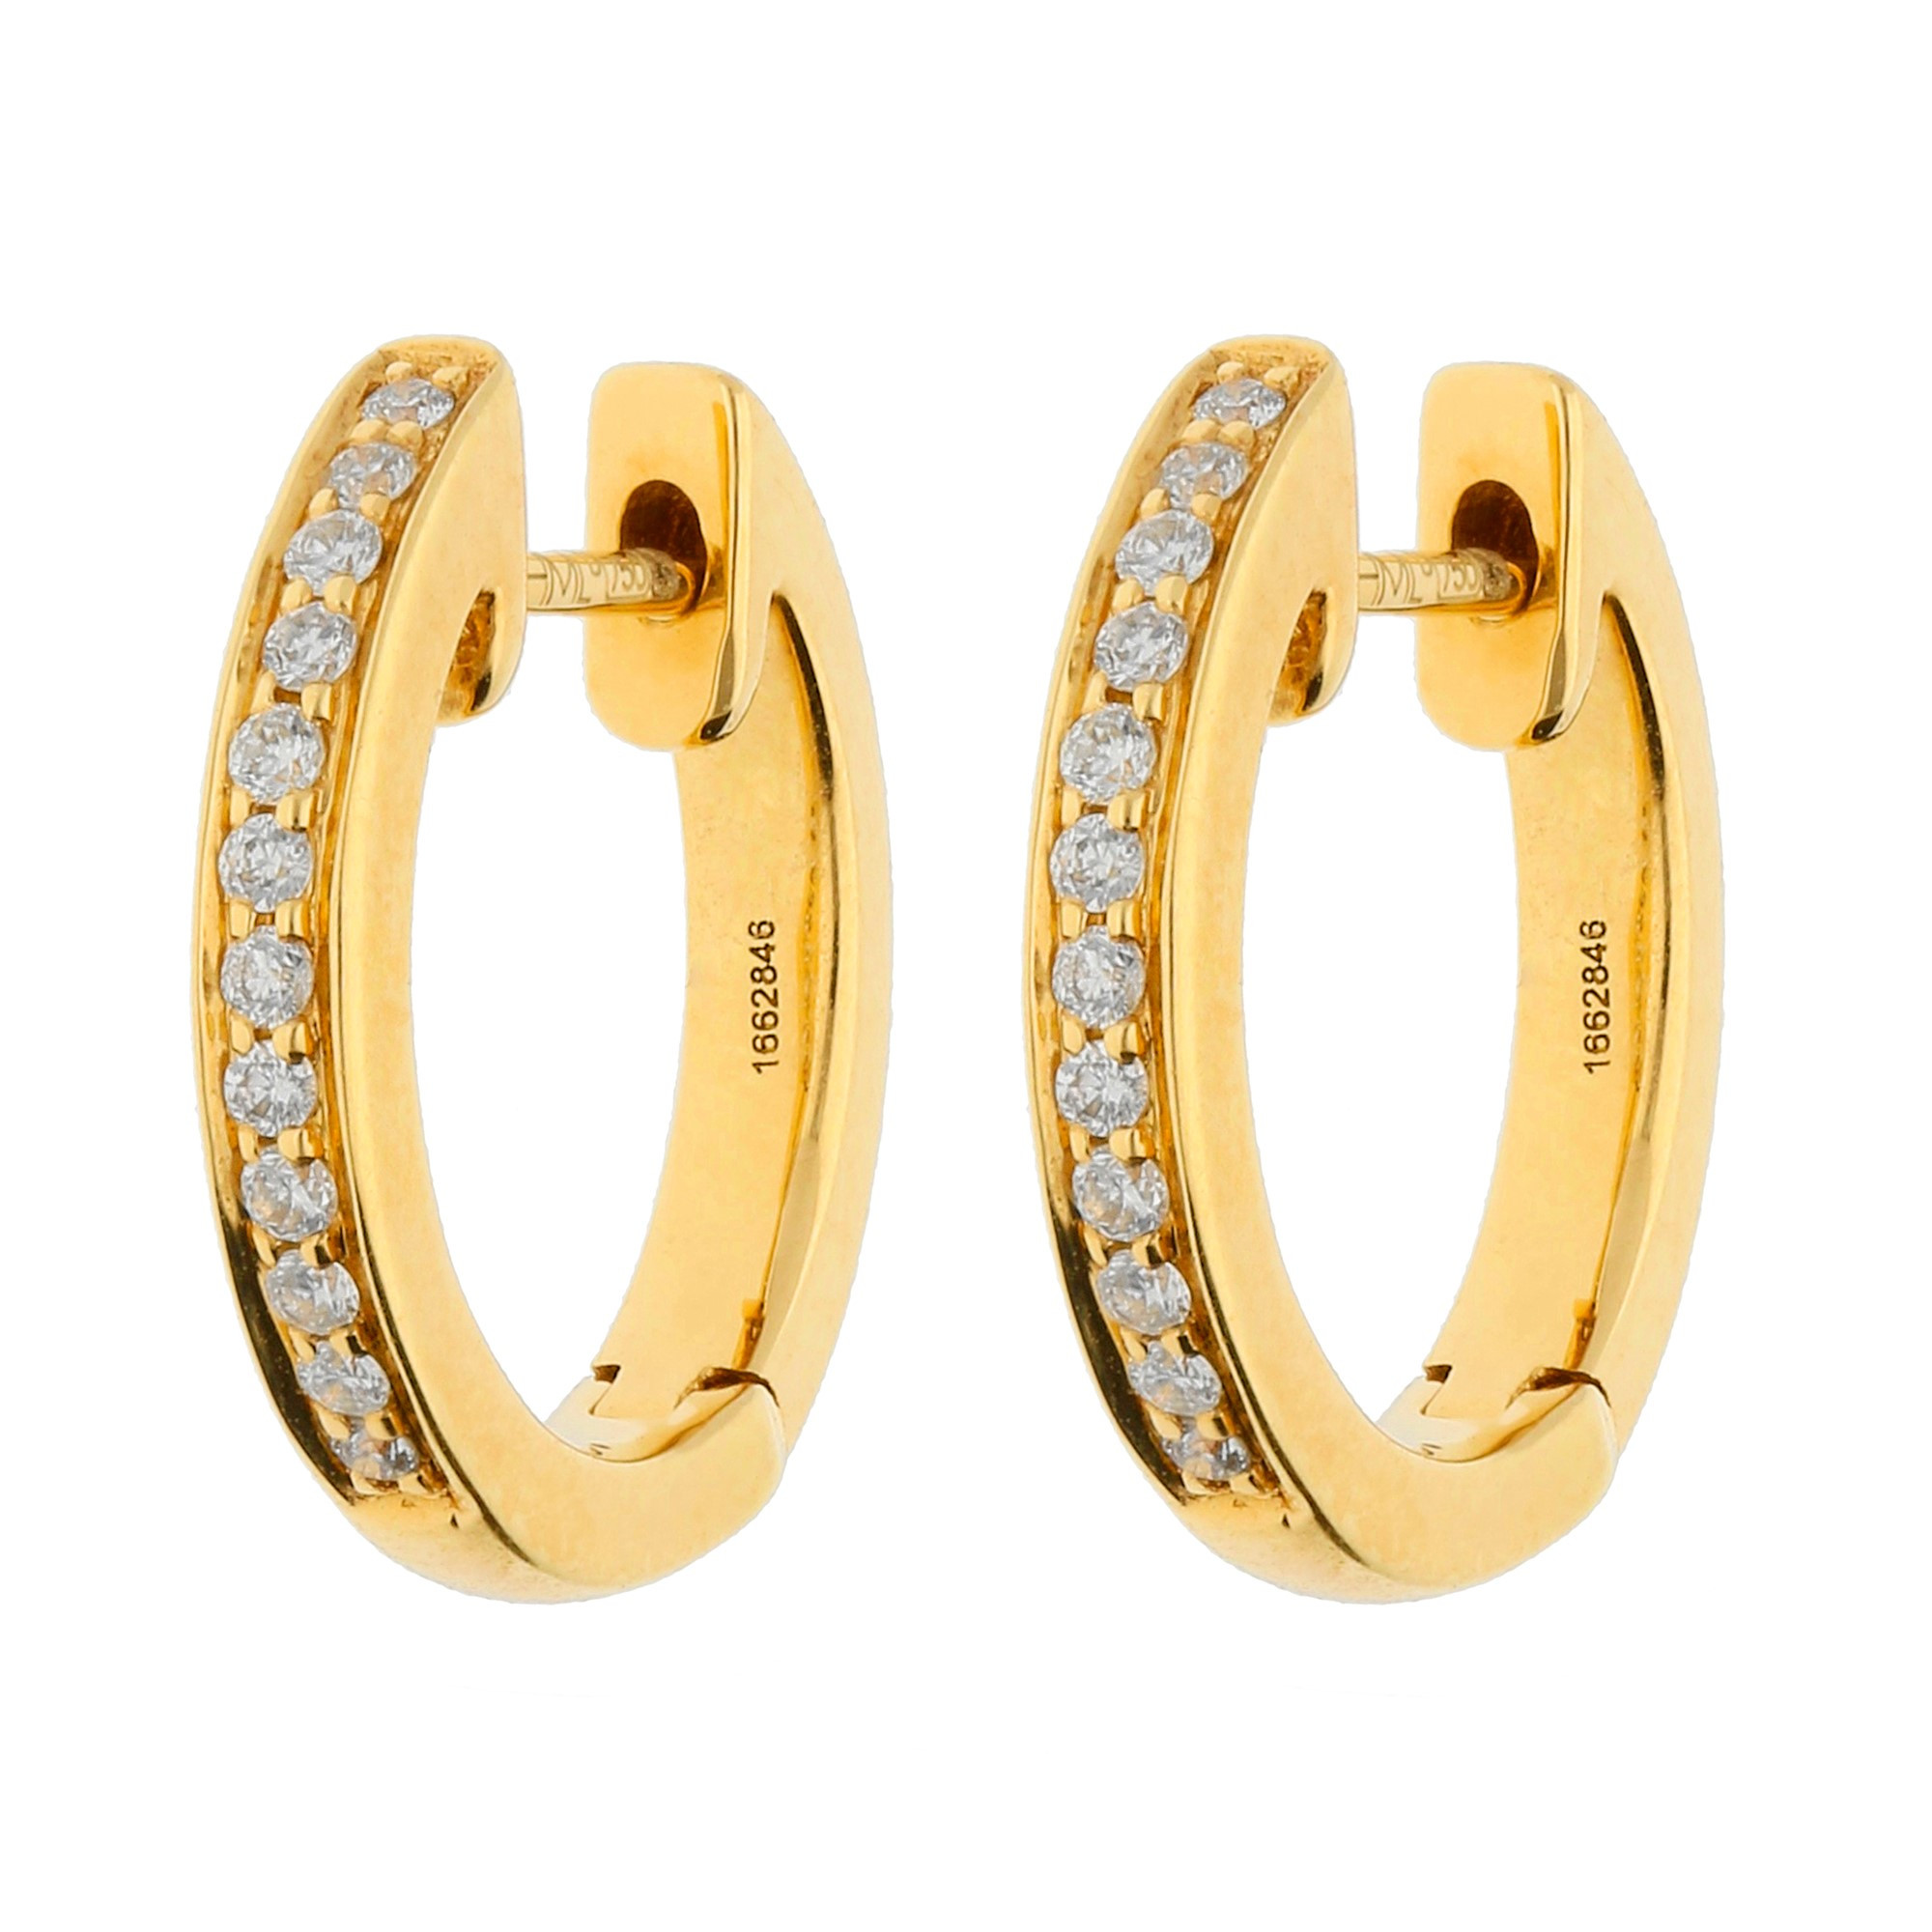 18ct Yellow Gold Diamond Hinged Hoop Earrings | Buy Online | Free